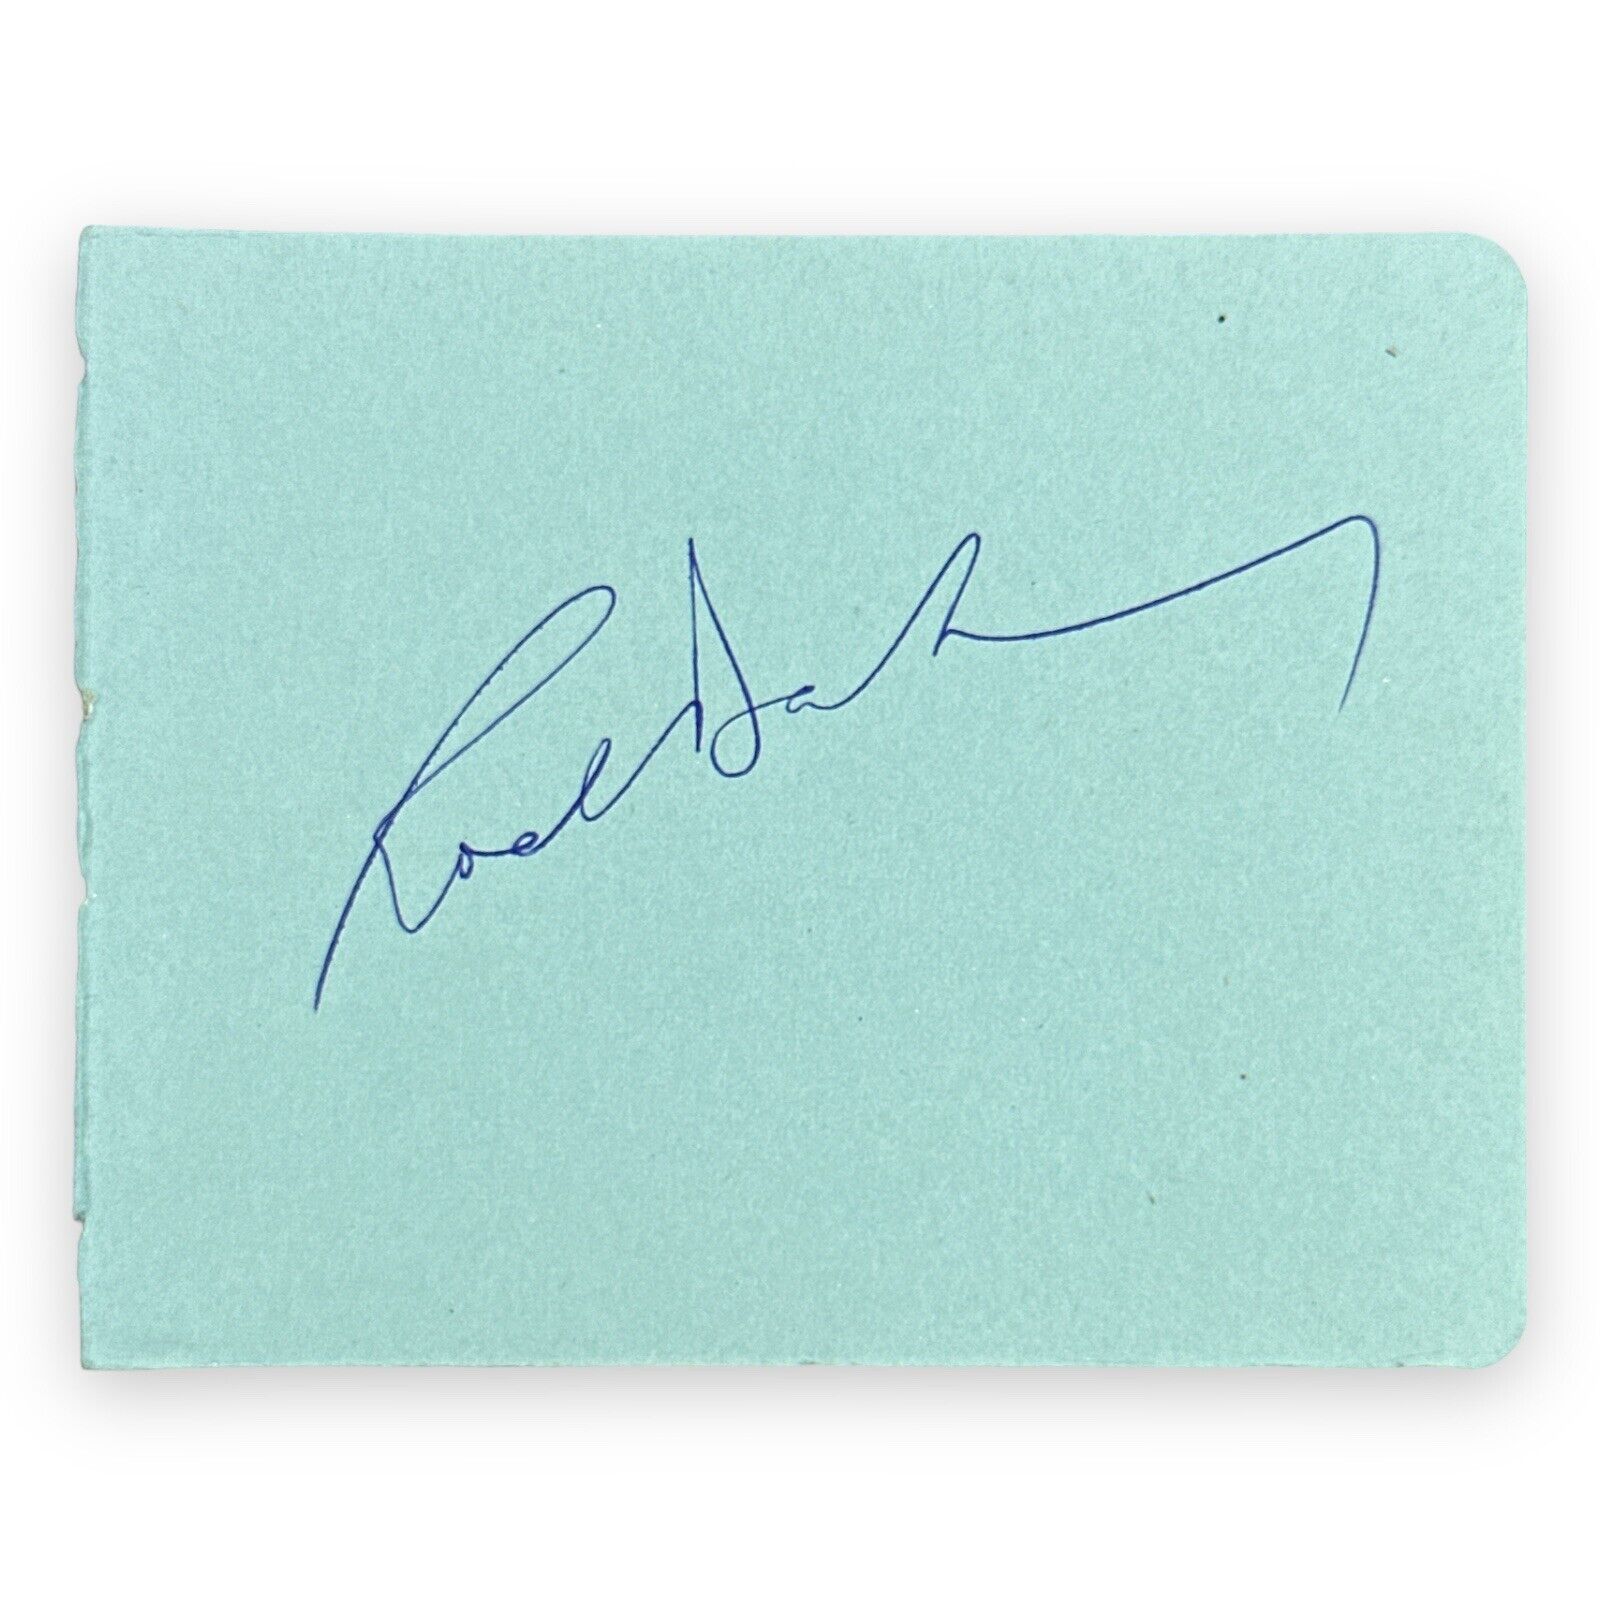 Roald Dahl Signed Autograph Album Page